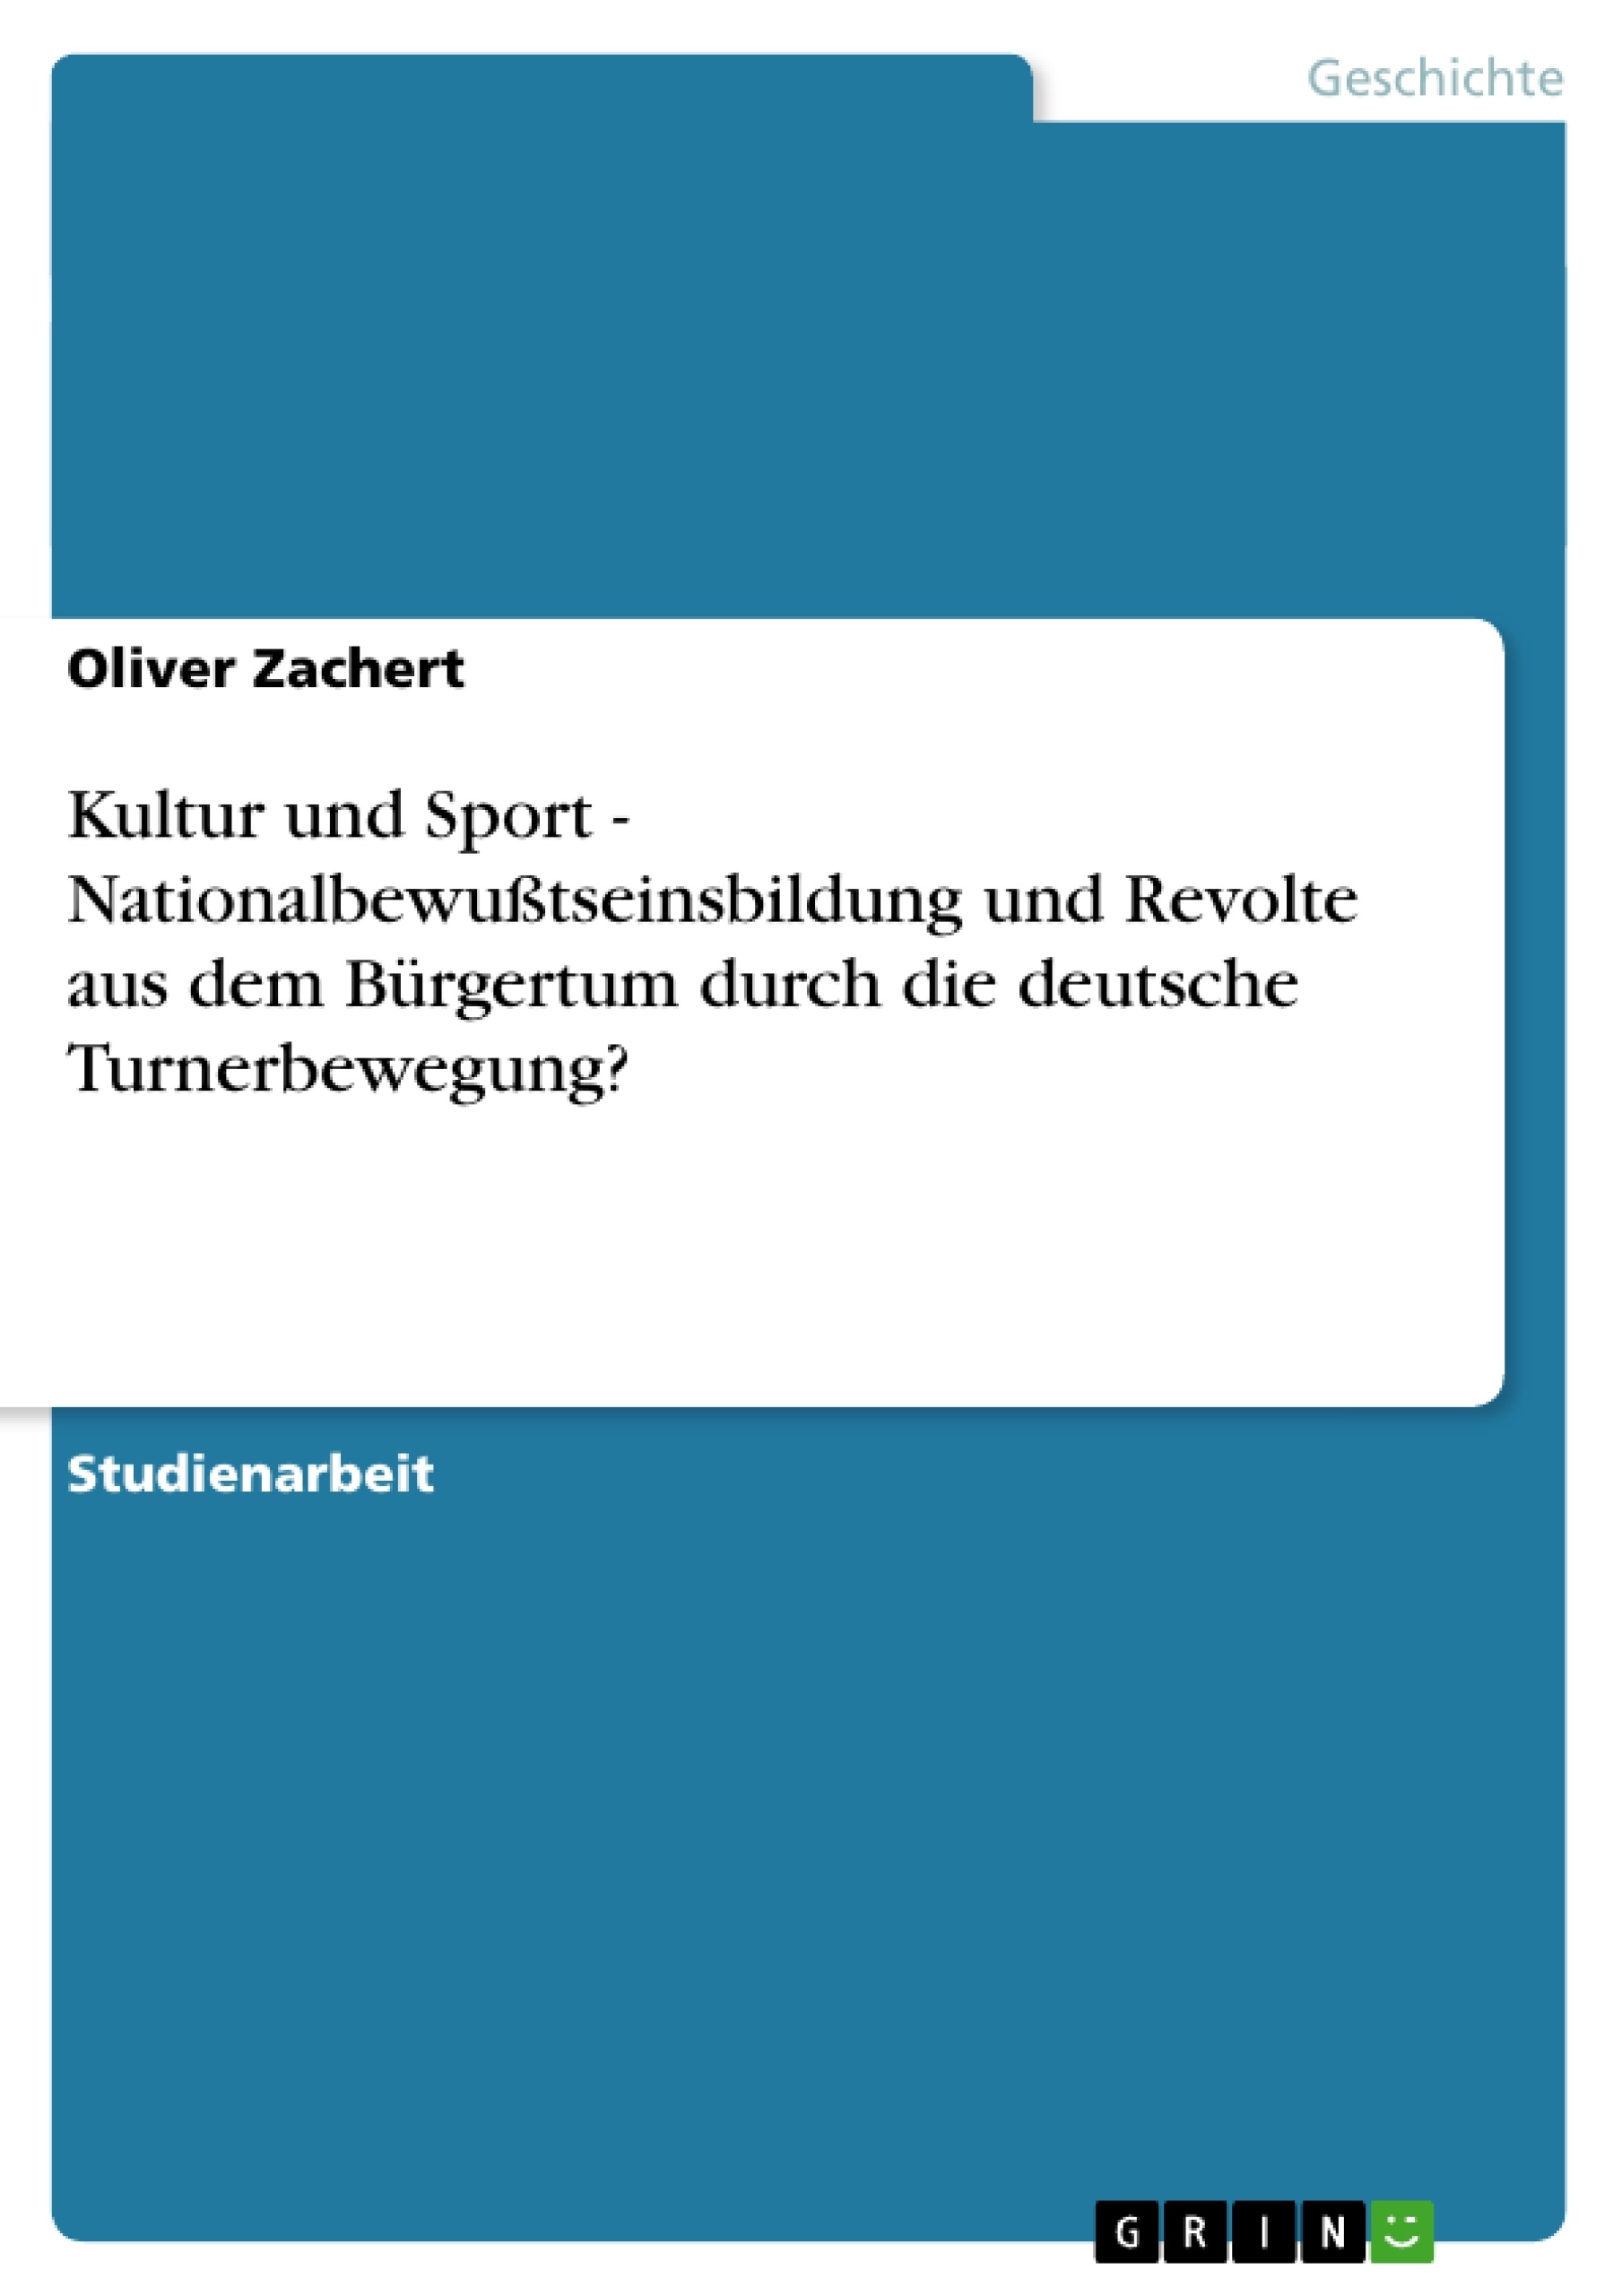 Título: Kultur und Sport - Nationalbewußtseinsbildung und Revolte aus dem Bürgertum durch die deutsche Turnerbewegung?